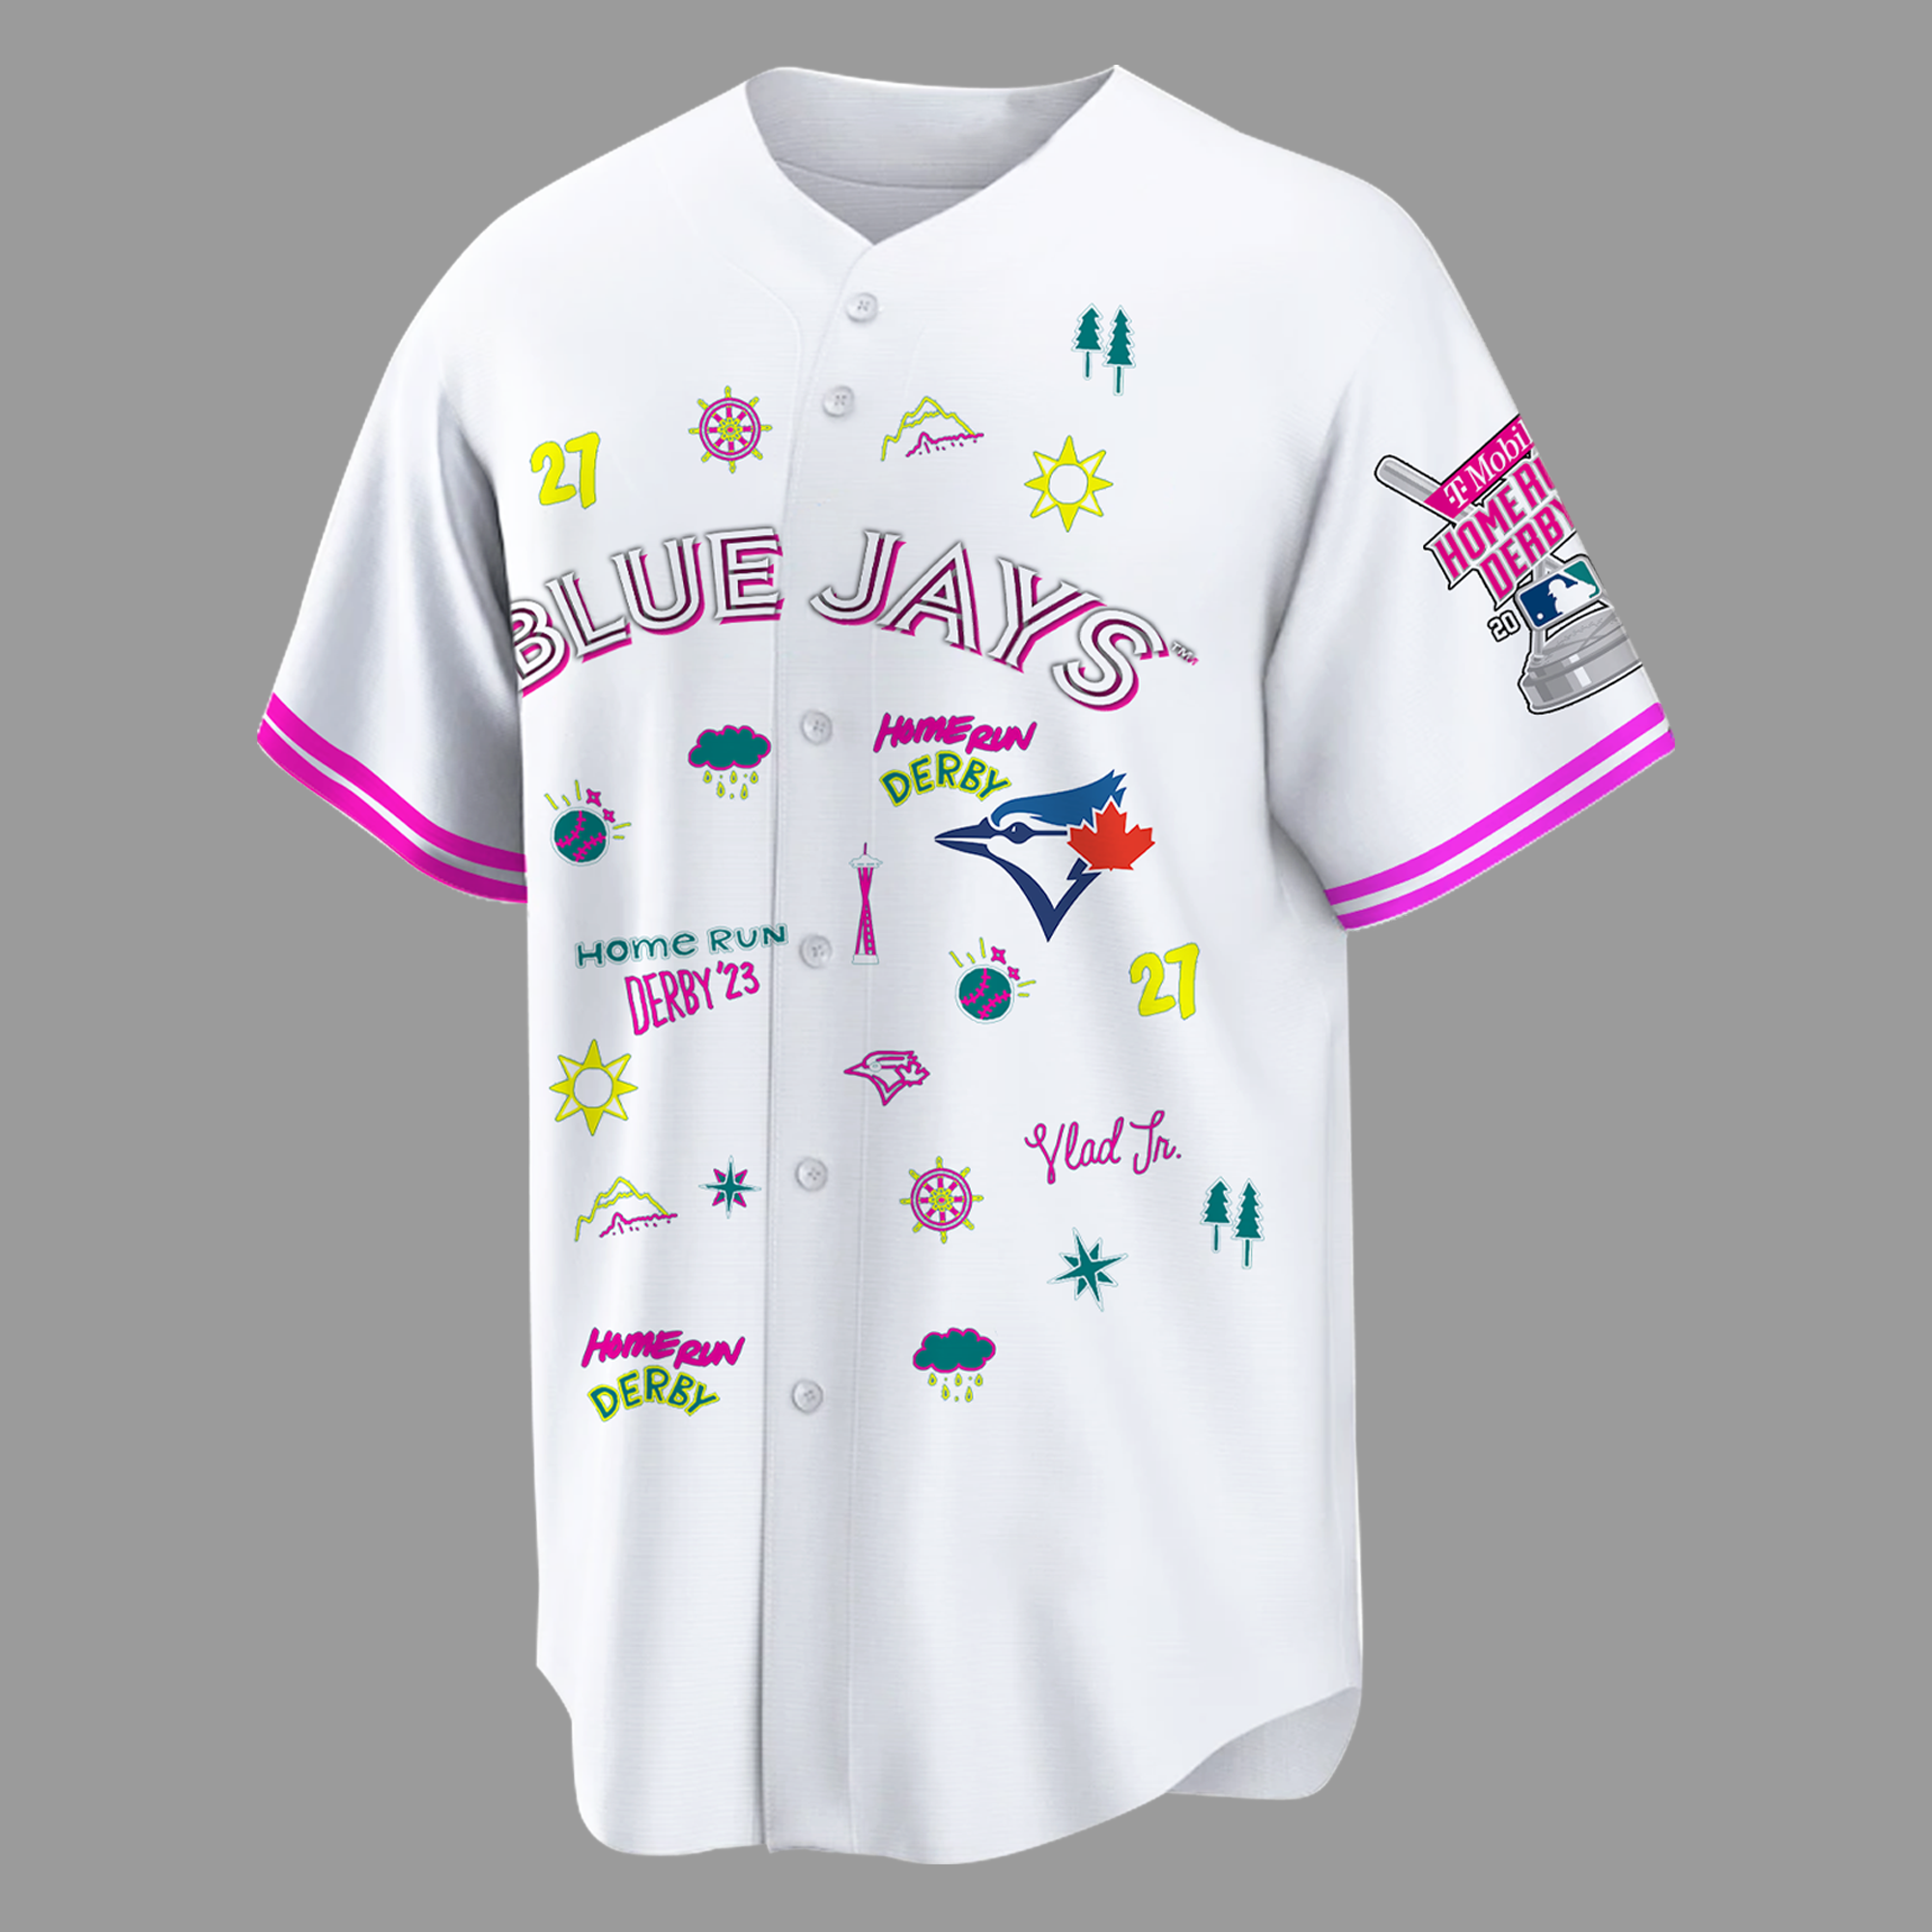 Vladimir Guerrero Jr. Jerseys, Vladimir Guerrero Jr. Shirts, 2023